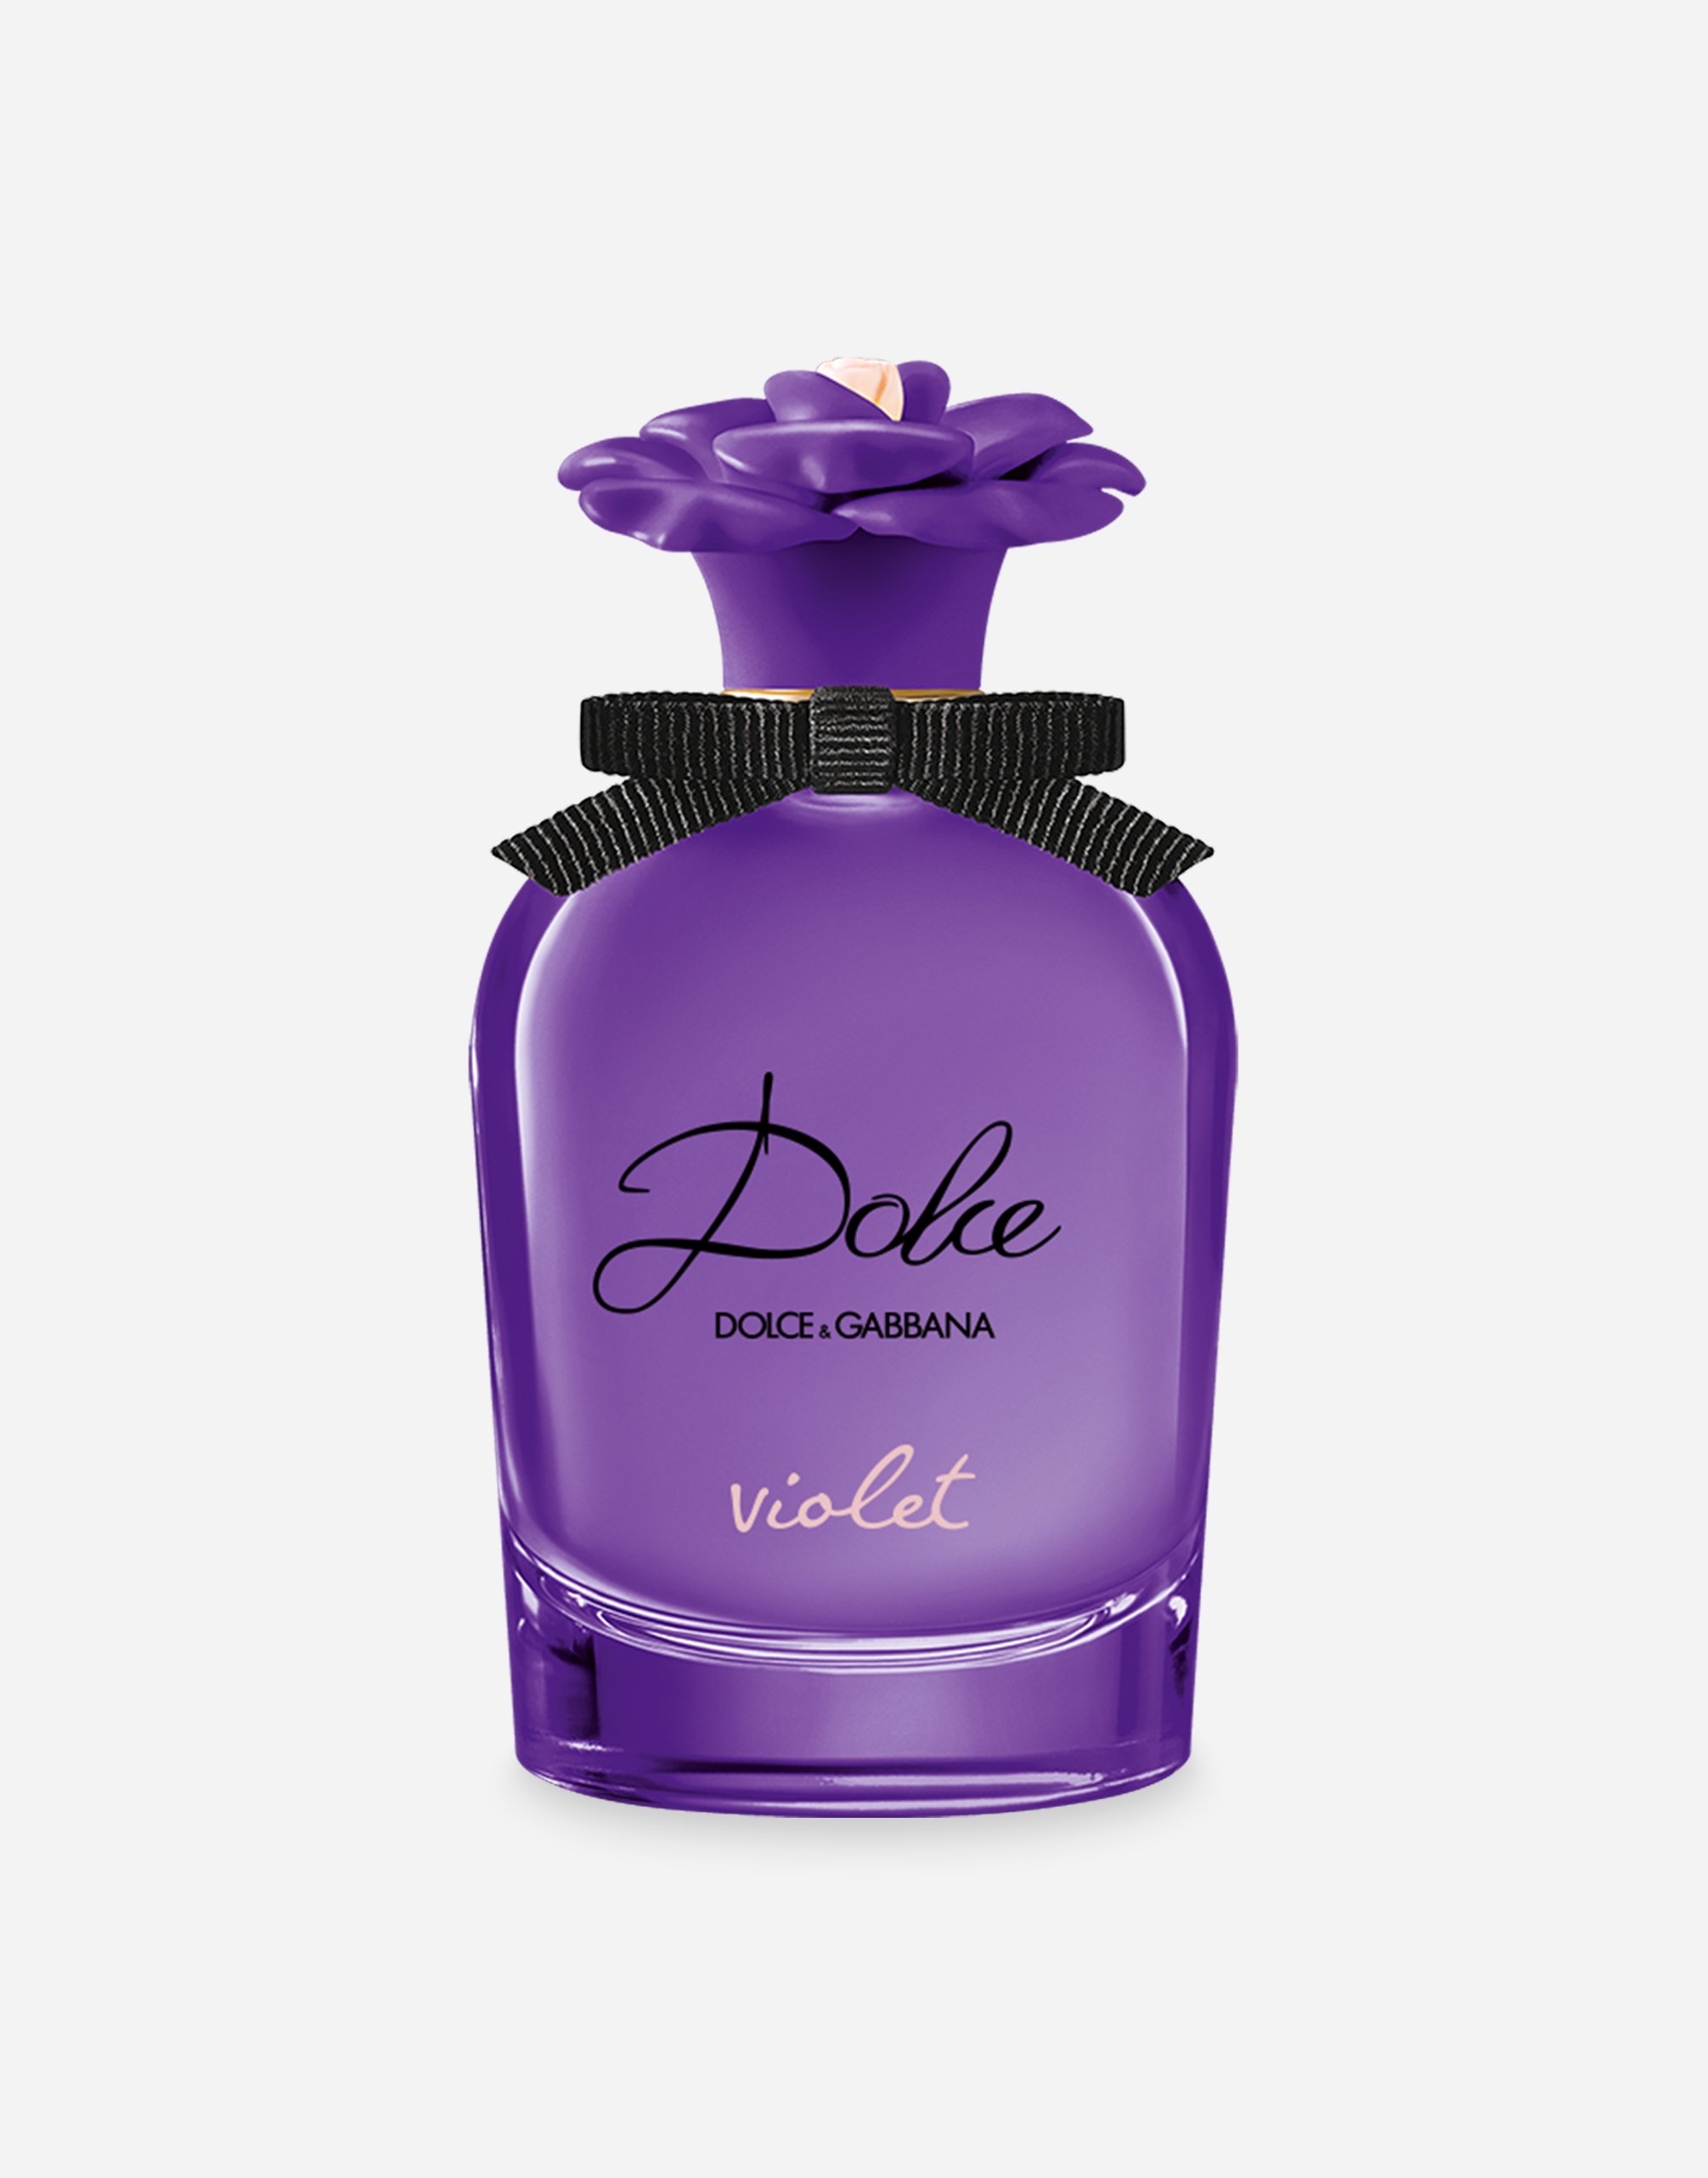 Ounce Gepland staart Dolce Violet Eau de Toilette in - for Women | Dolce&Gabbana®